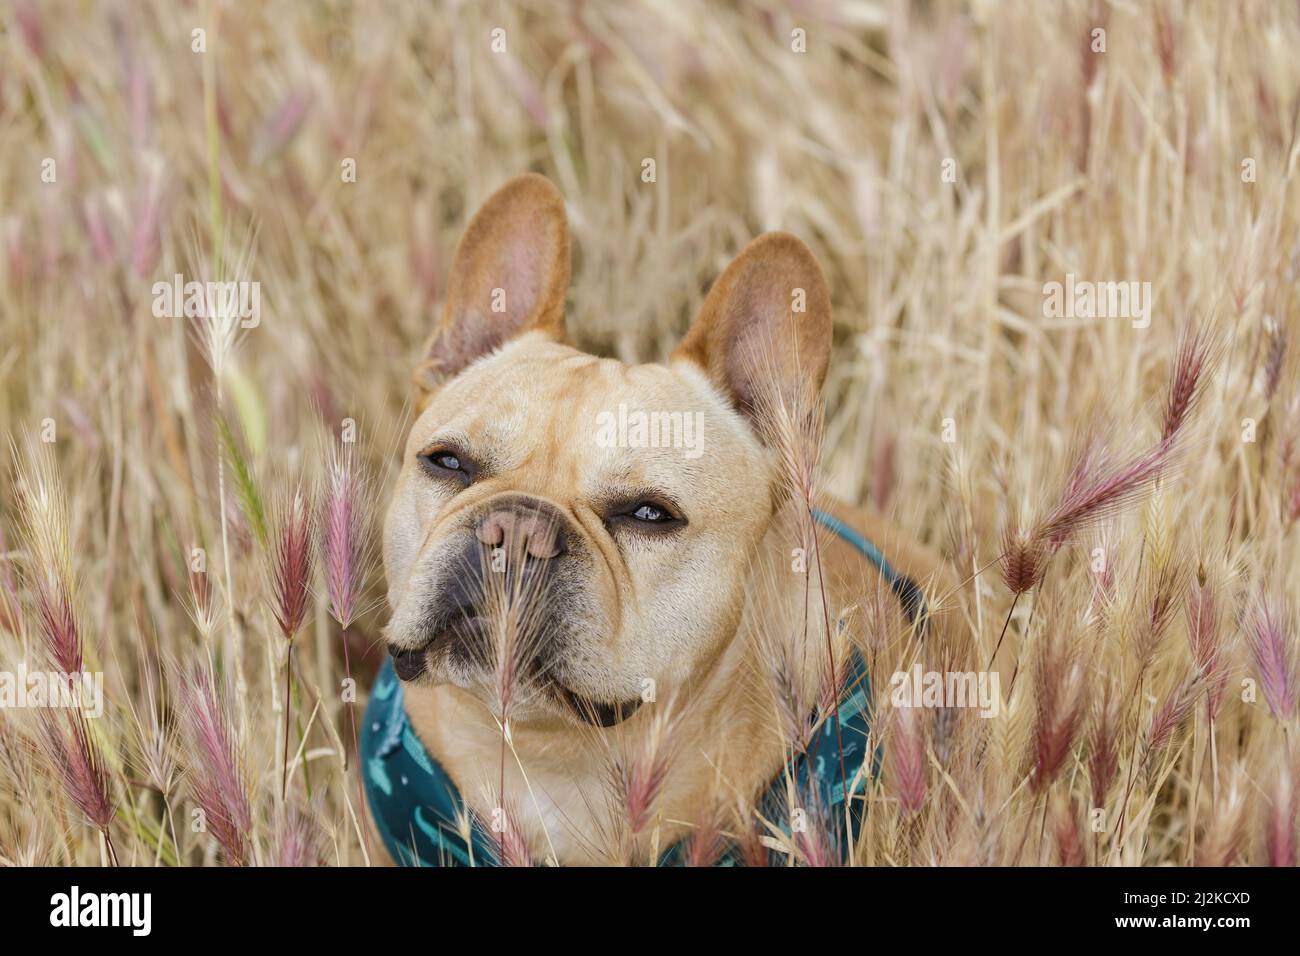 Le piante di Foxtail possono essere rischiose per i cani. Bulldog francese nel campo Foxtail nella California settentrionale. Foto Stock